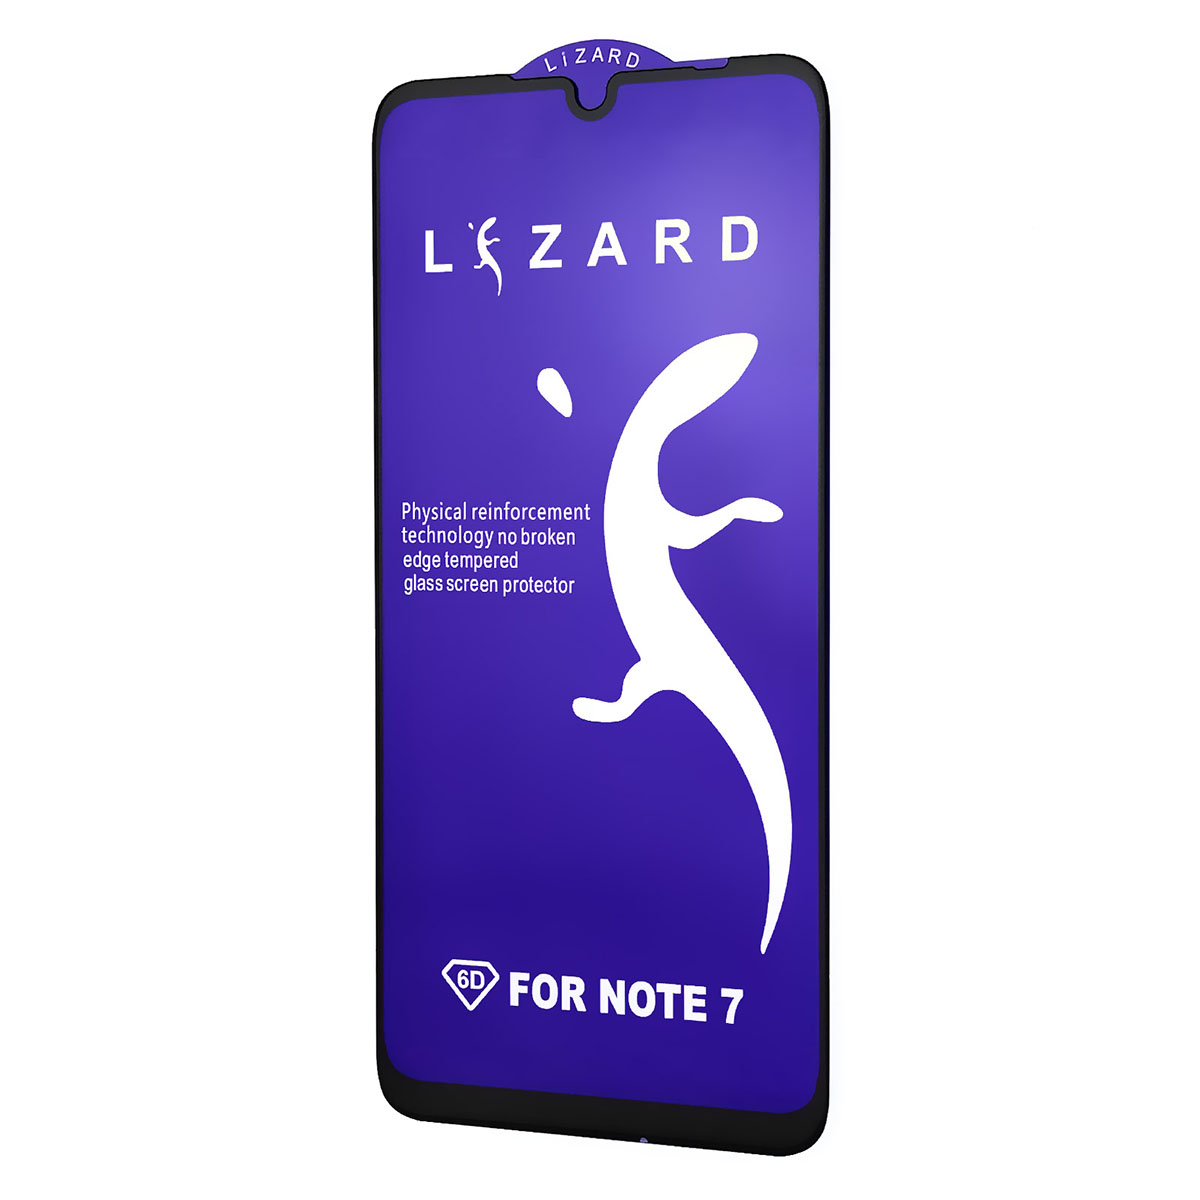 Защитное стекло 9D Lizard для XIAOMI Redmi Note 7, Redmi Note 7 Pro, цвет черный.